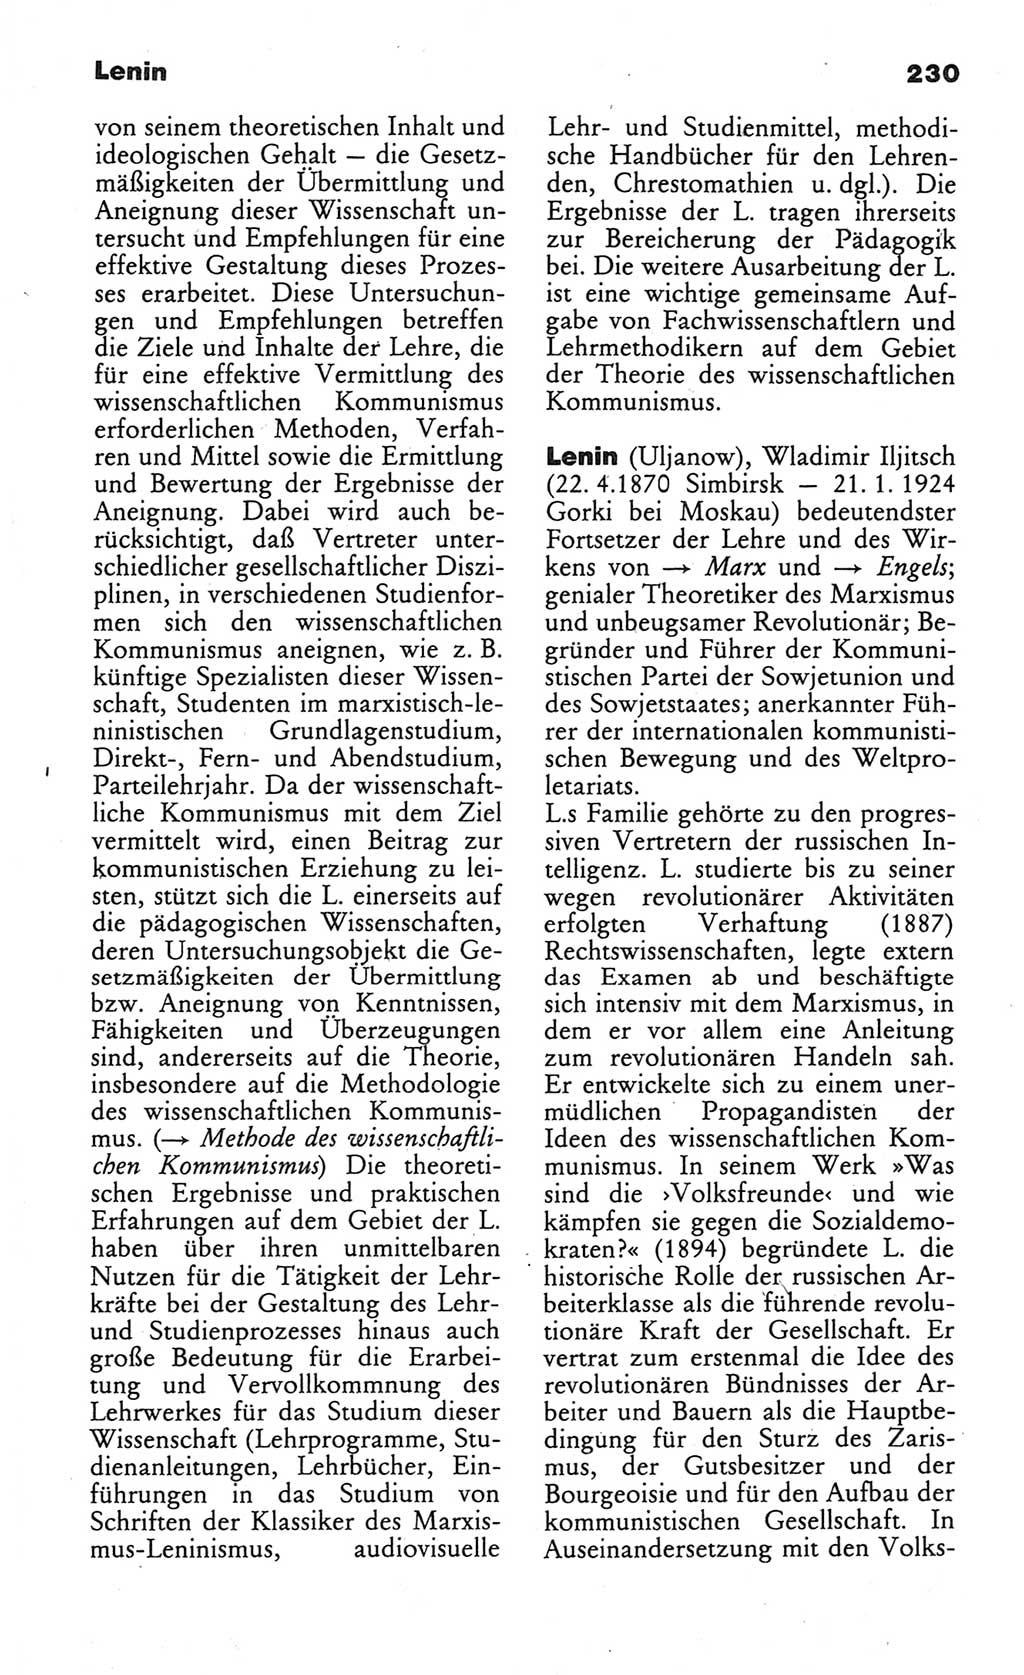 Wörterbuch des wissenschaftlichen Kommunismus [Deutsche Demokratische Republik (DDR)] 1984, Seite 230 (Wb. wiss. Komm. DDR 1984, S. 230)